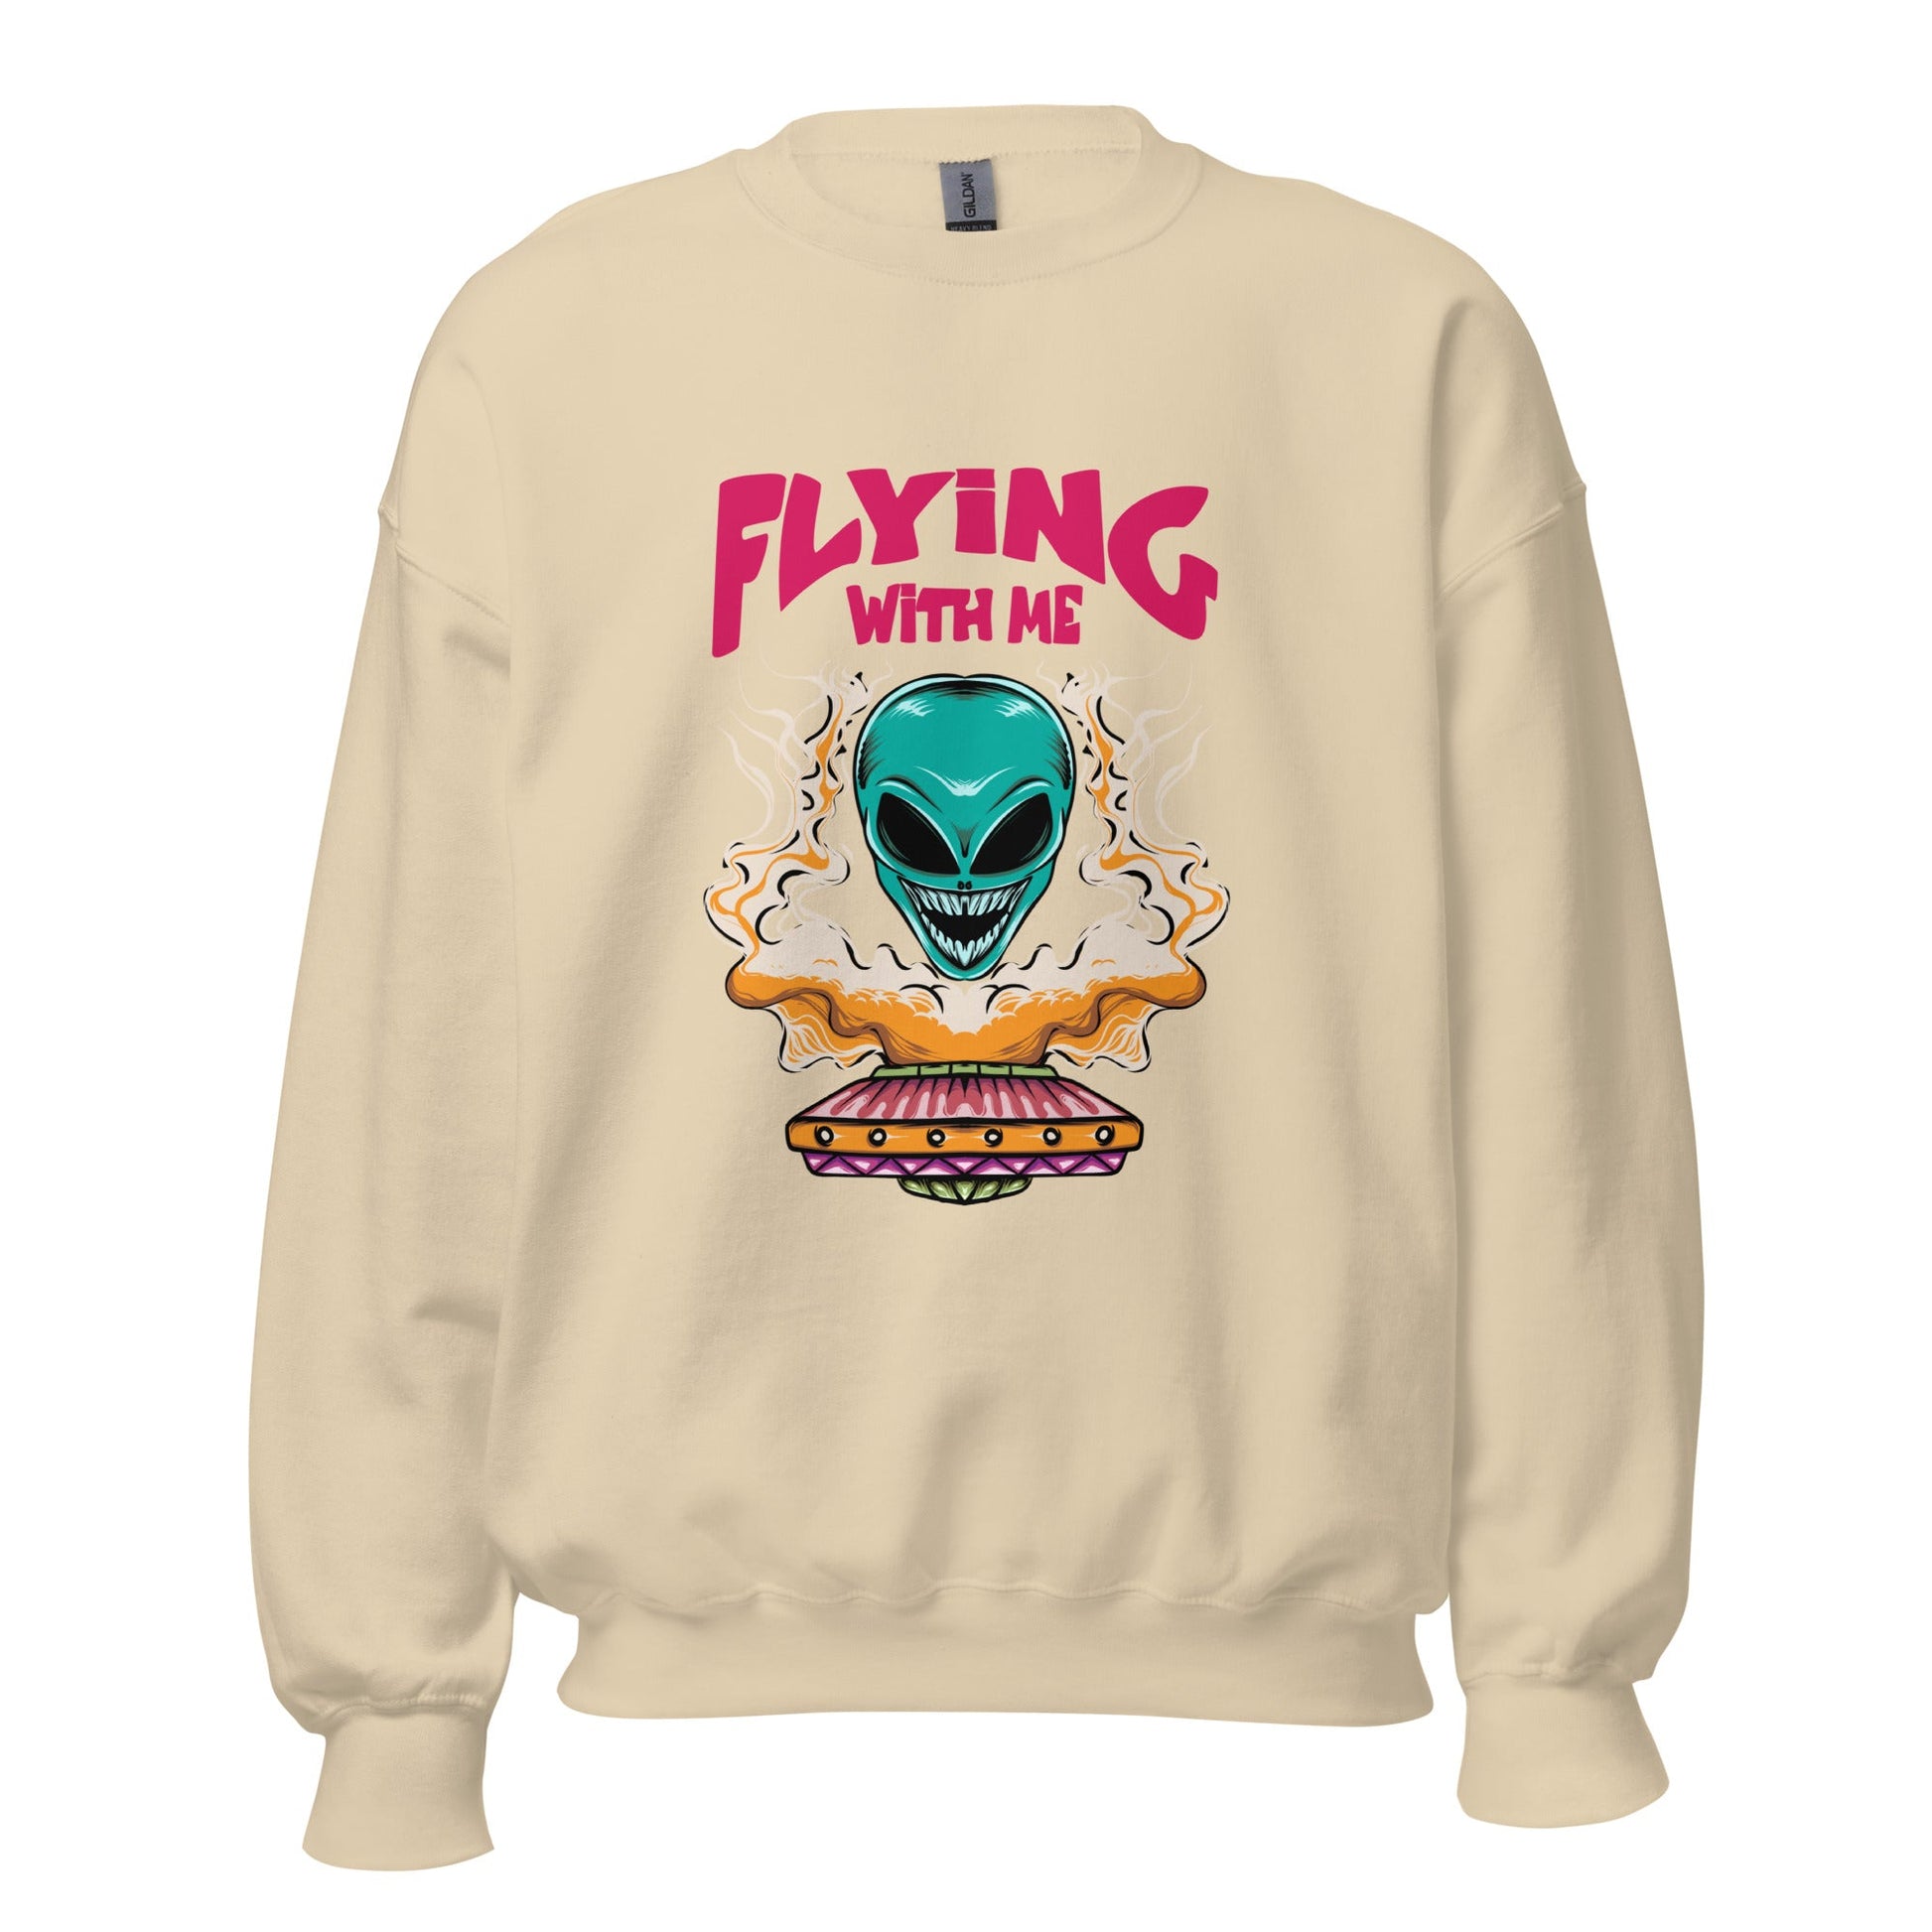 UFO Flying with Us Unisex Sweatshirt - Explore the Uncharted Skies